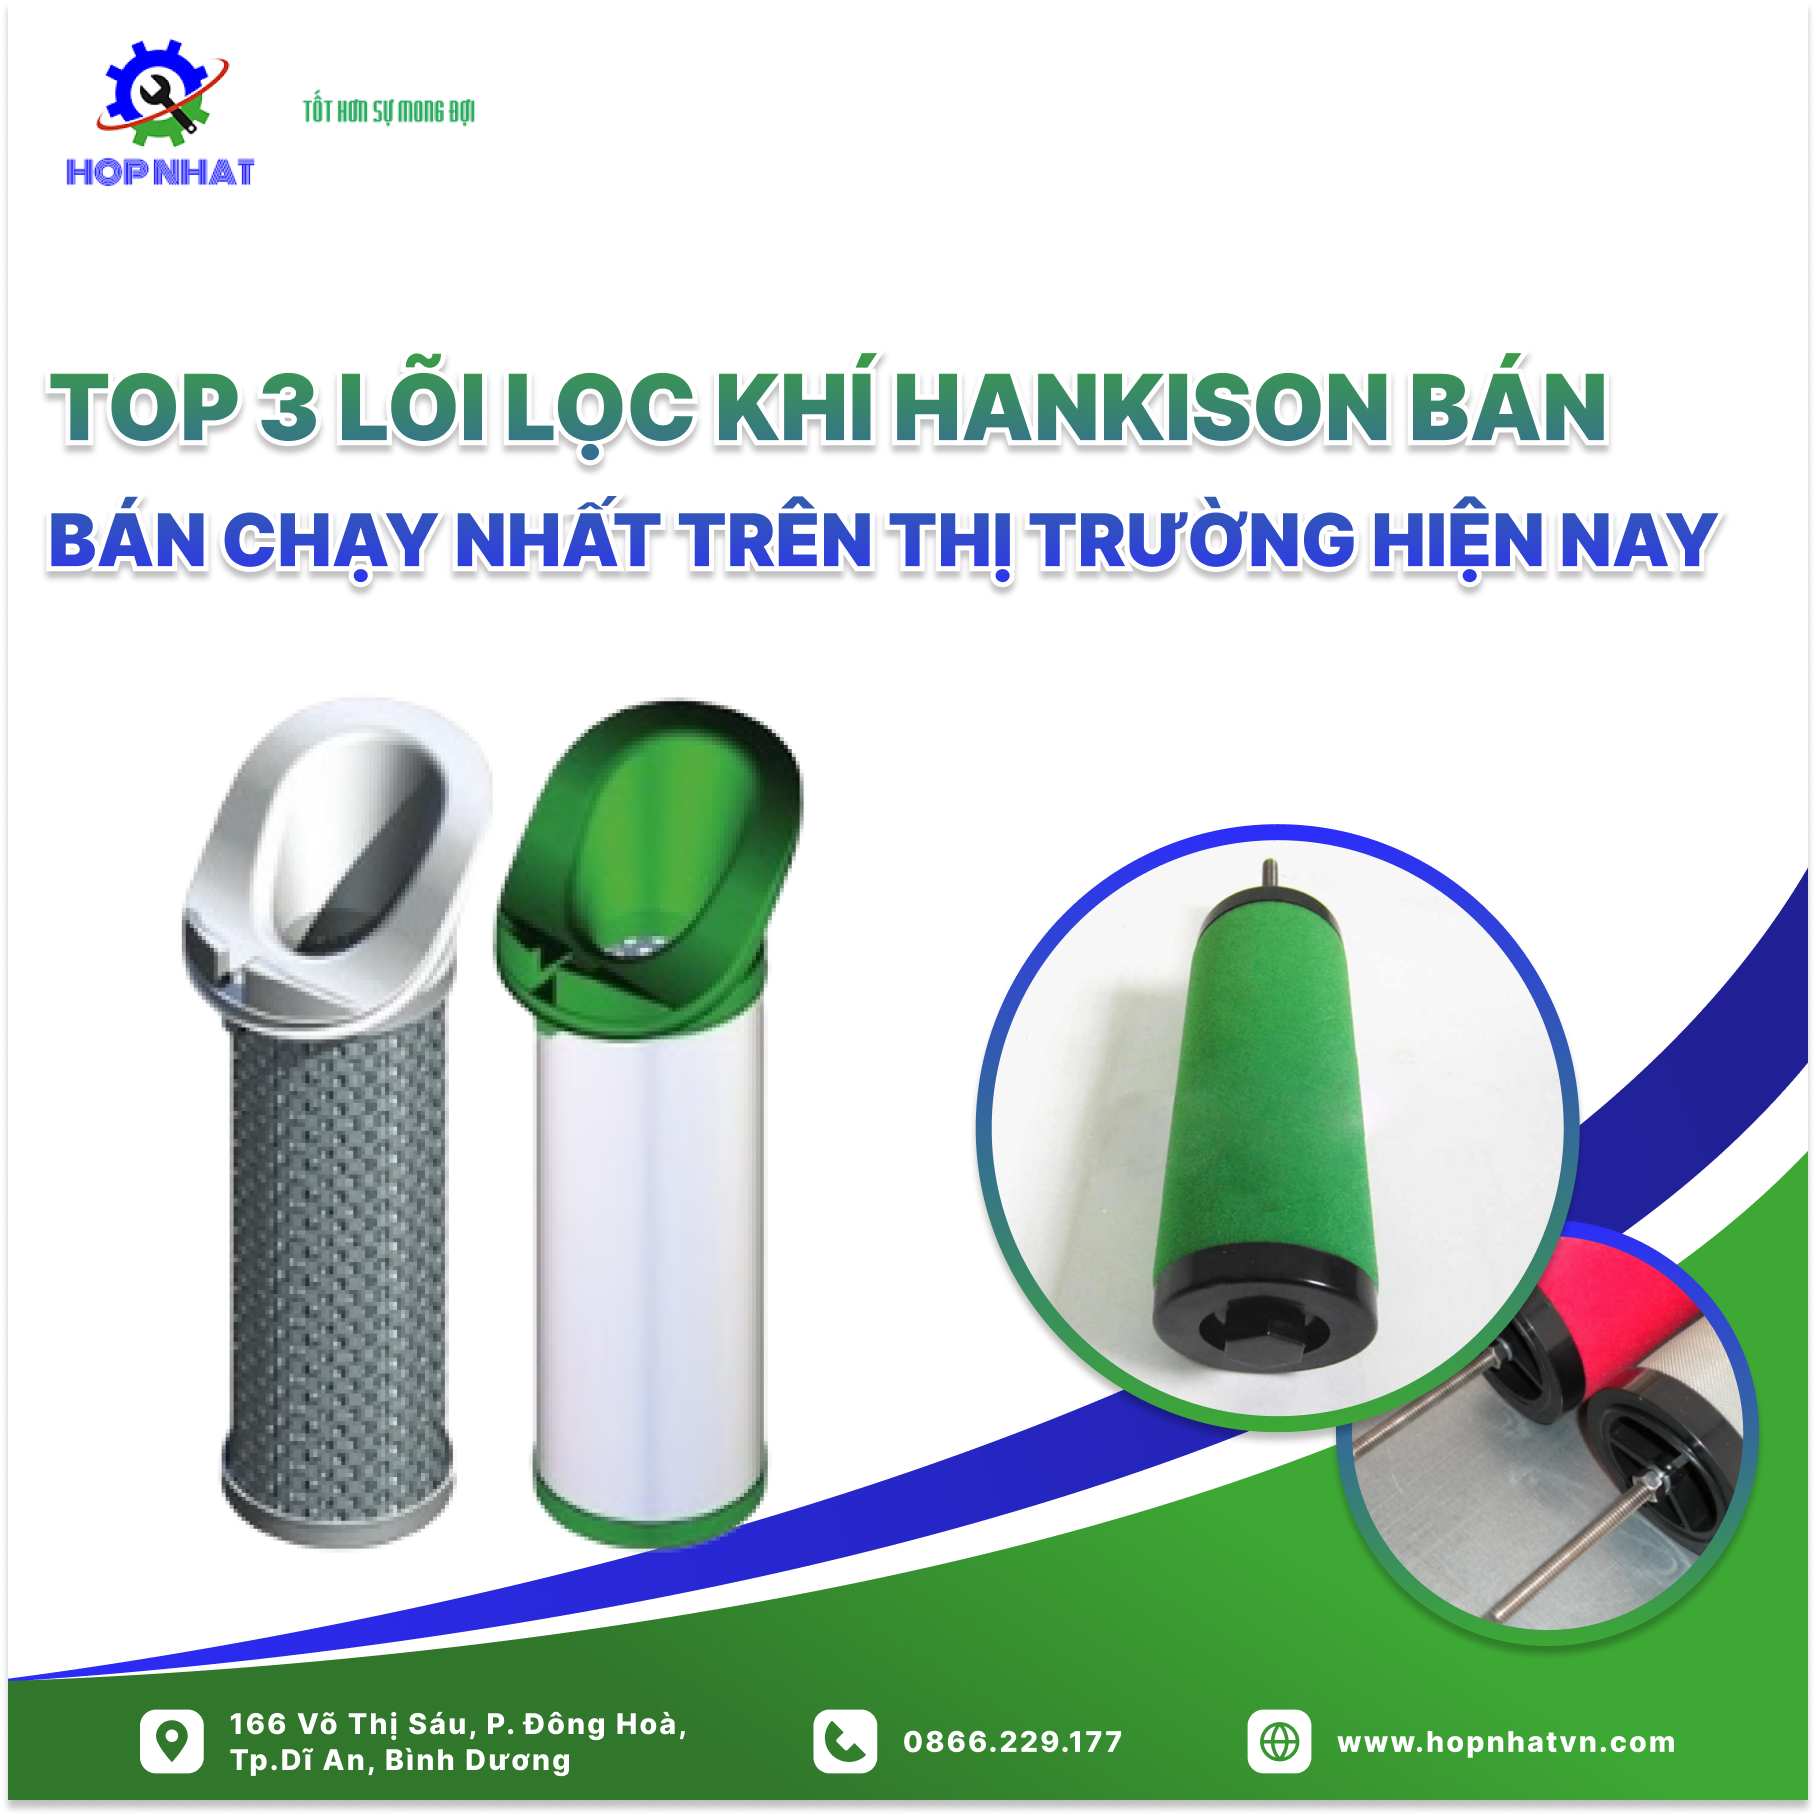 Top 3 lõi lọc khí Hankison bán chạy nhất trên thị trường hiện nay